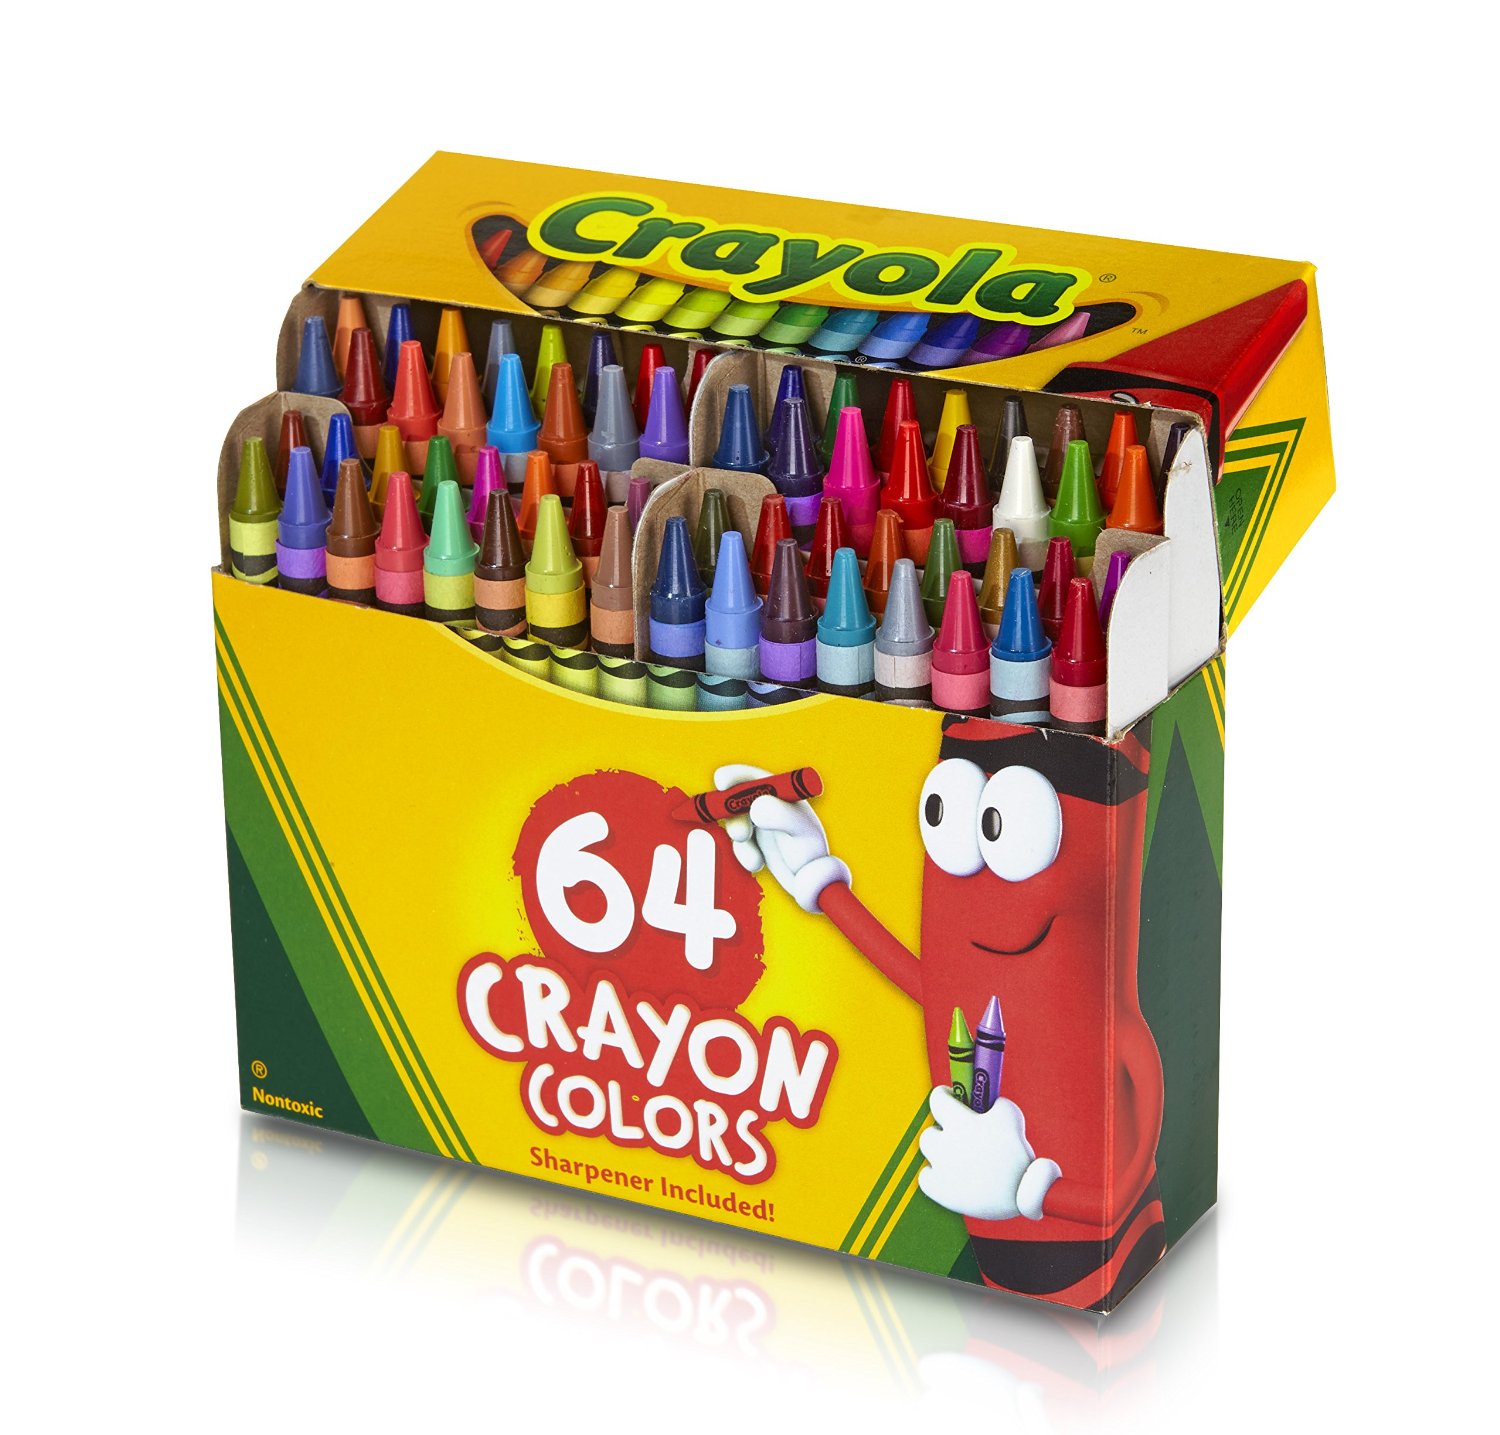 Crayola 64 Ct Crayons – Just $2.54!